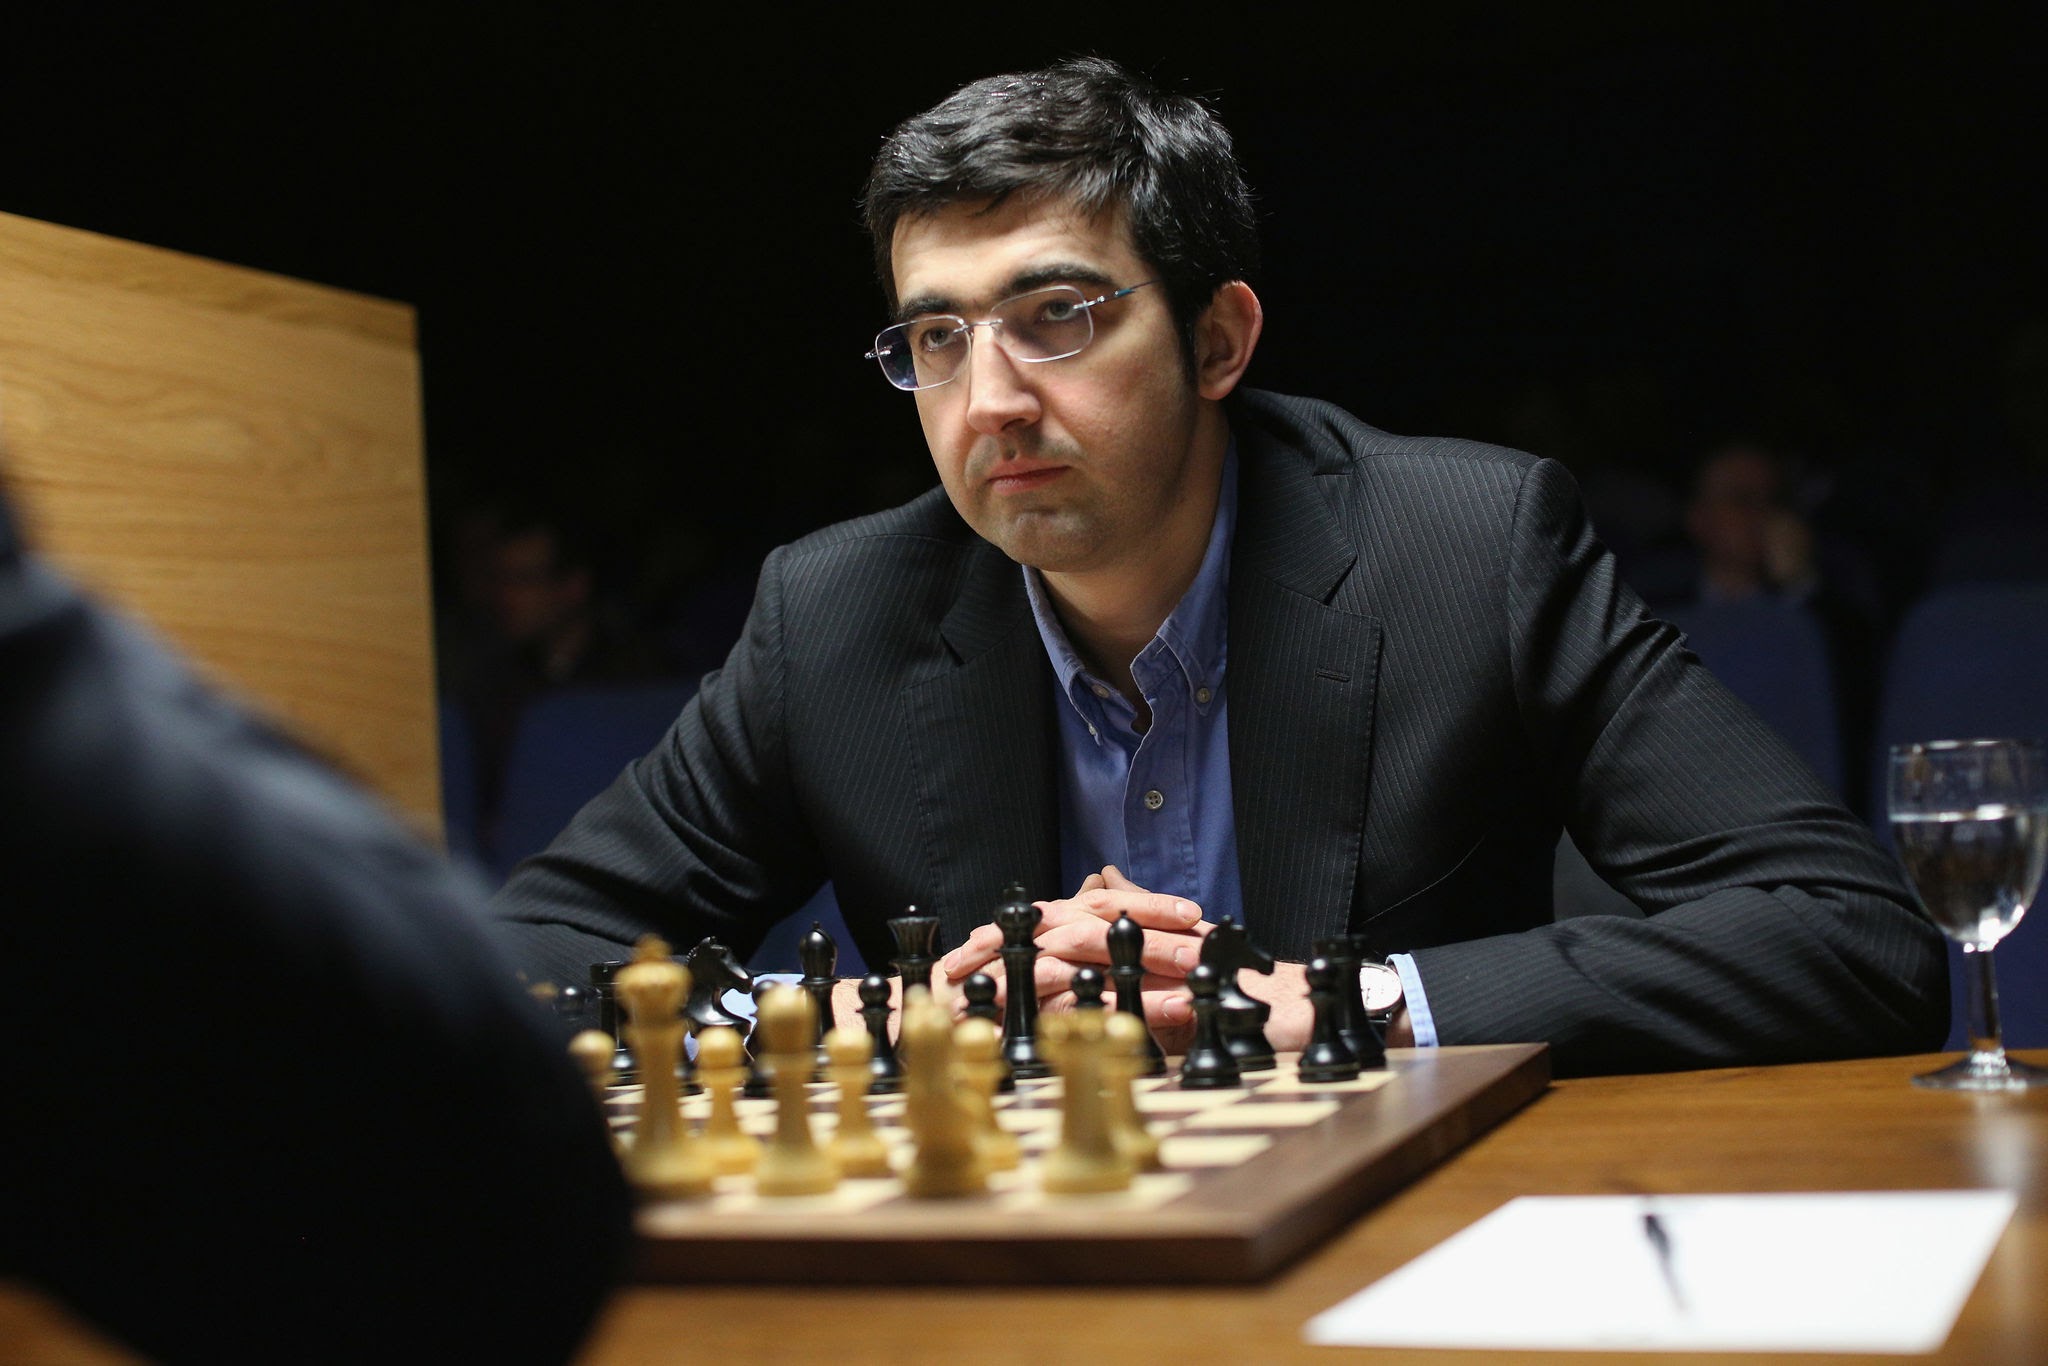 October 2016 ratings: Kramnik is now 2817